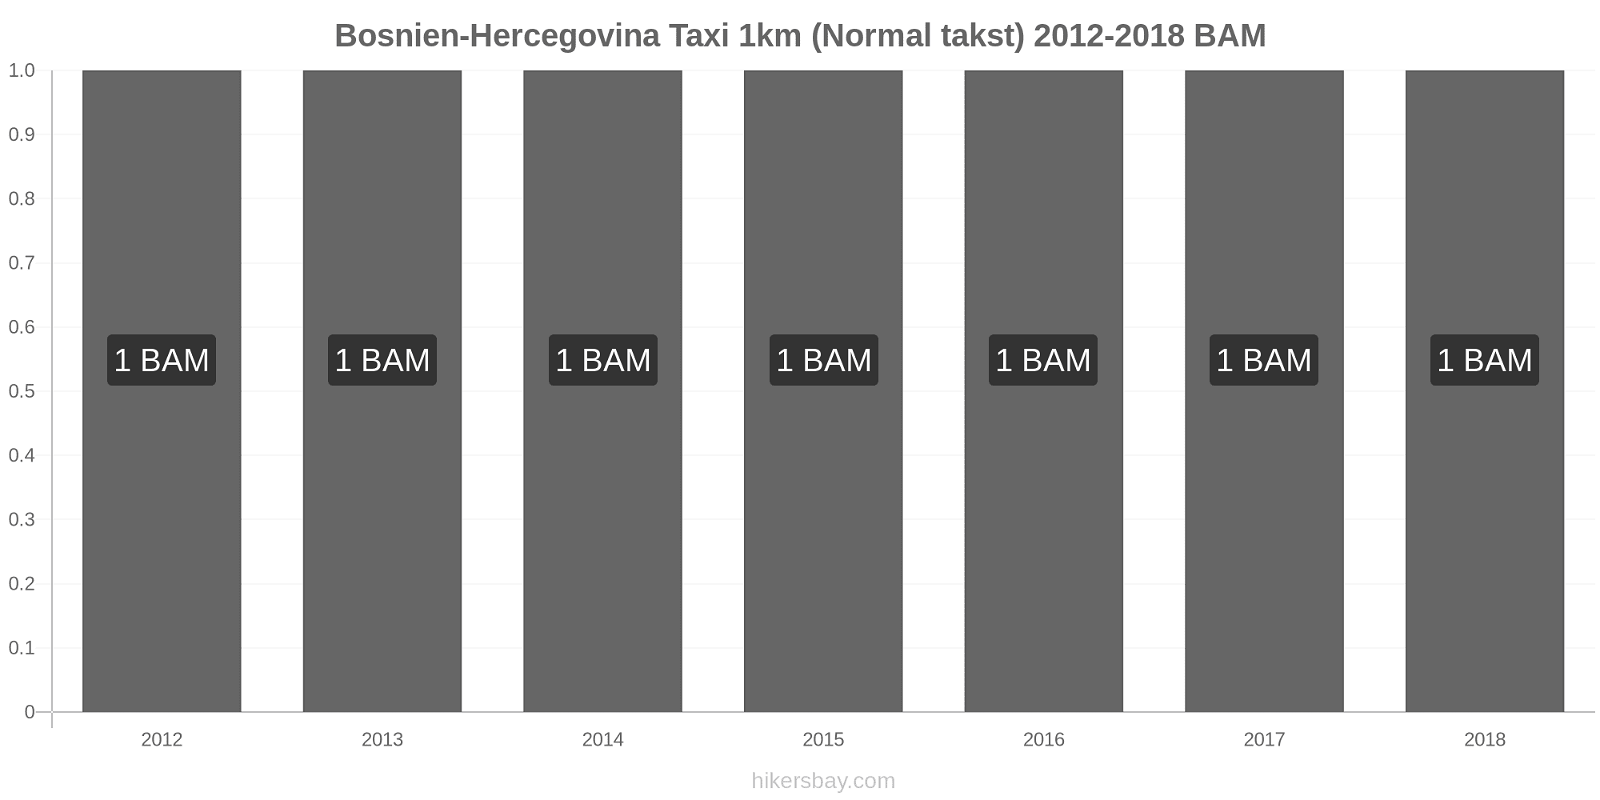 Bosnien-Hercegovina prisændringer Taxi 1km (normal takst) hikersbay.com